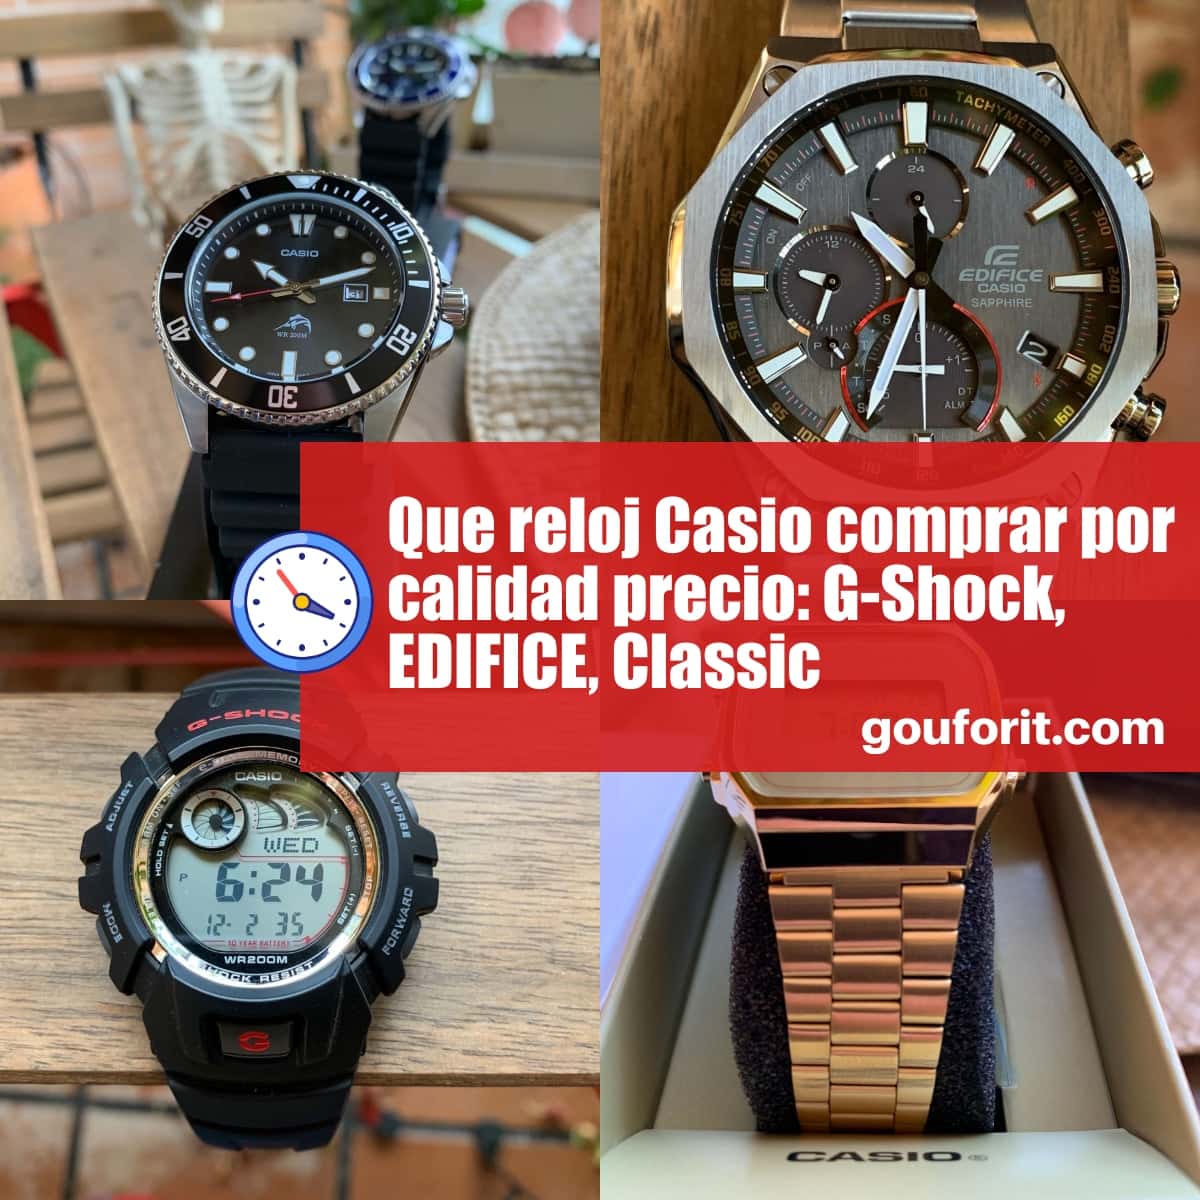 Que reloj Casio comprar por calidad precio: G-Shock, EDIFICE, Classic